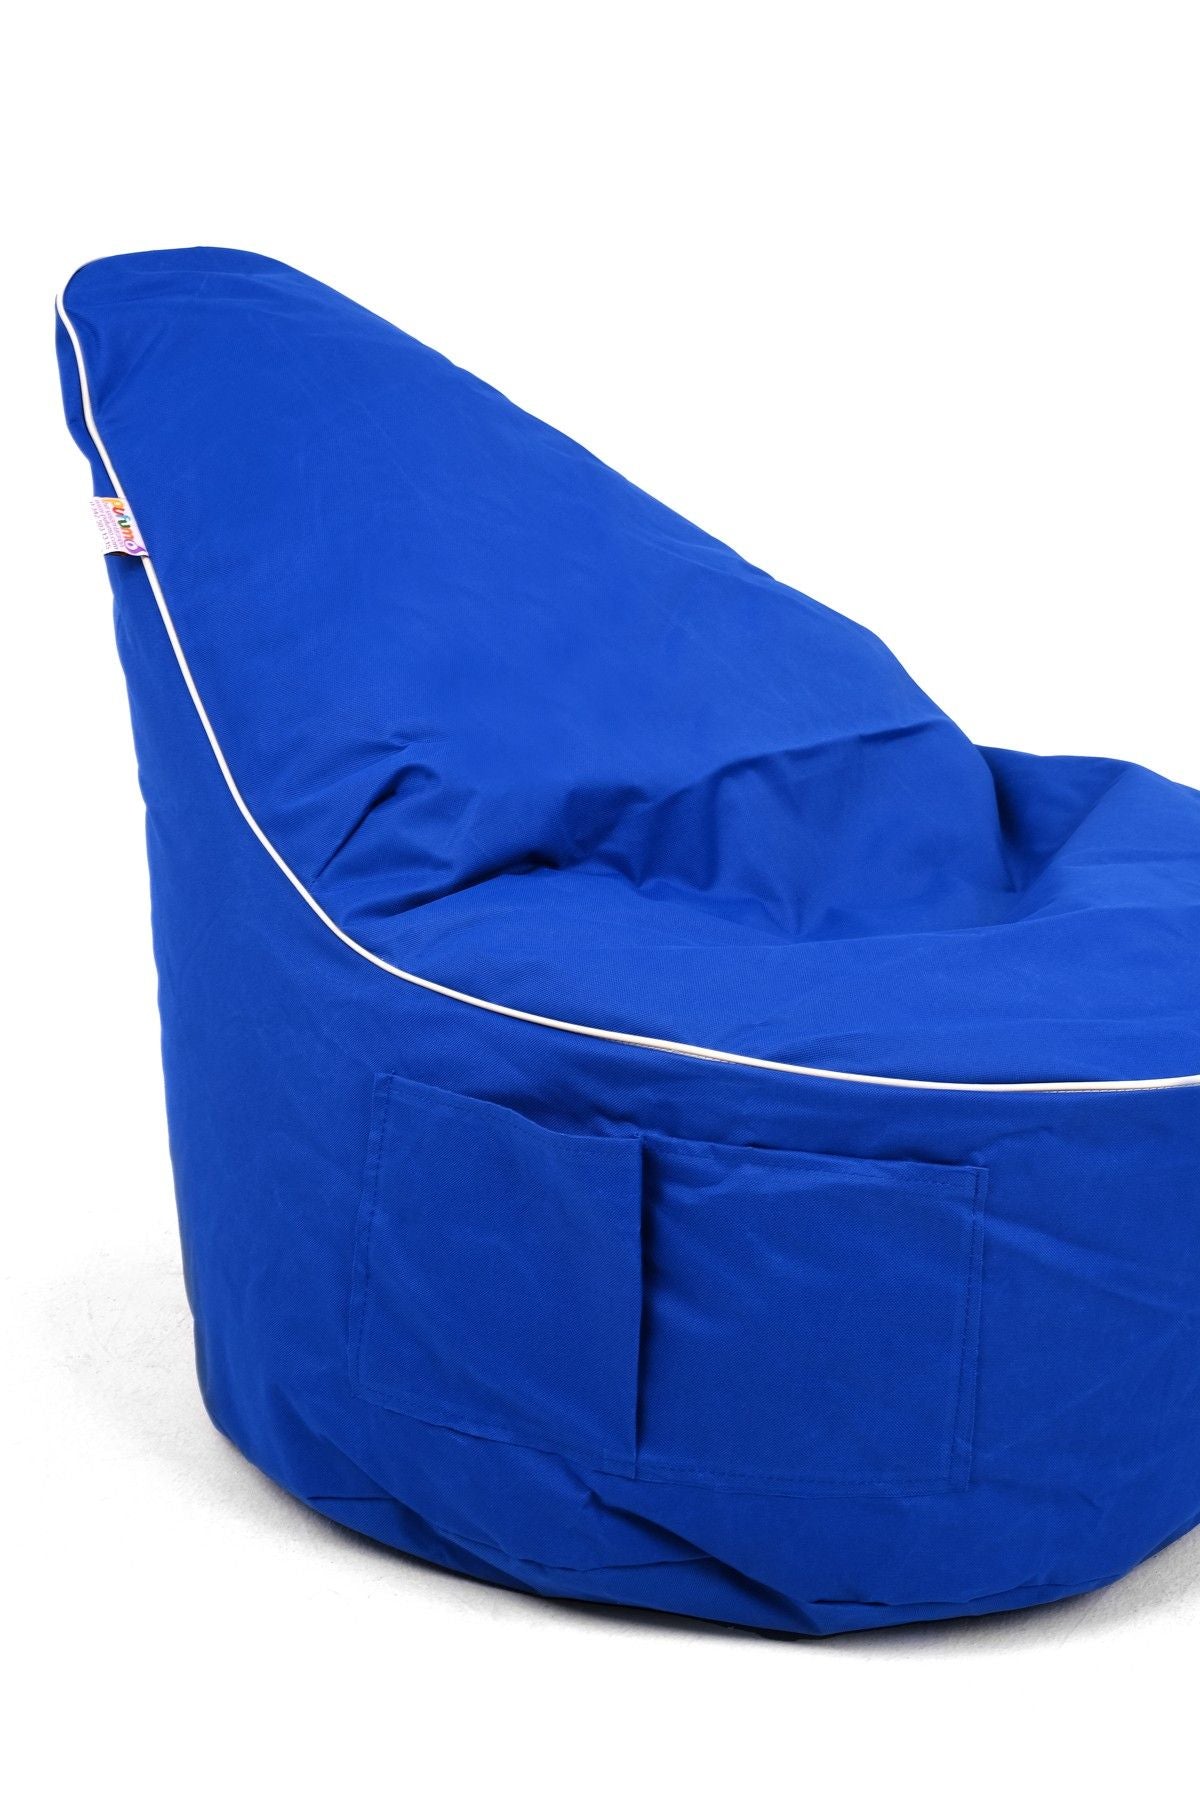 Golf - Blue - Bean Bag